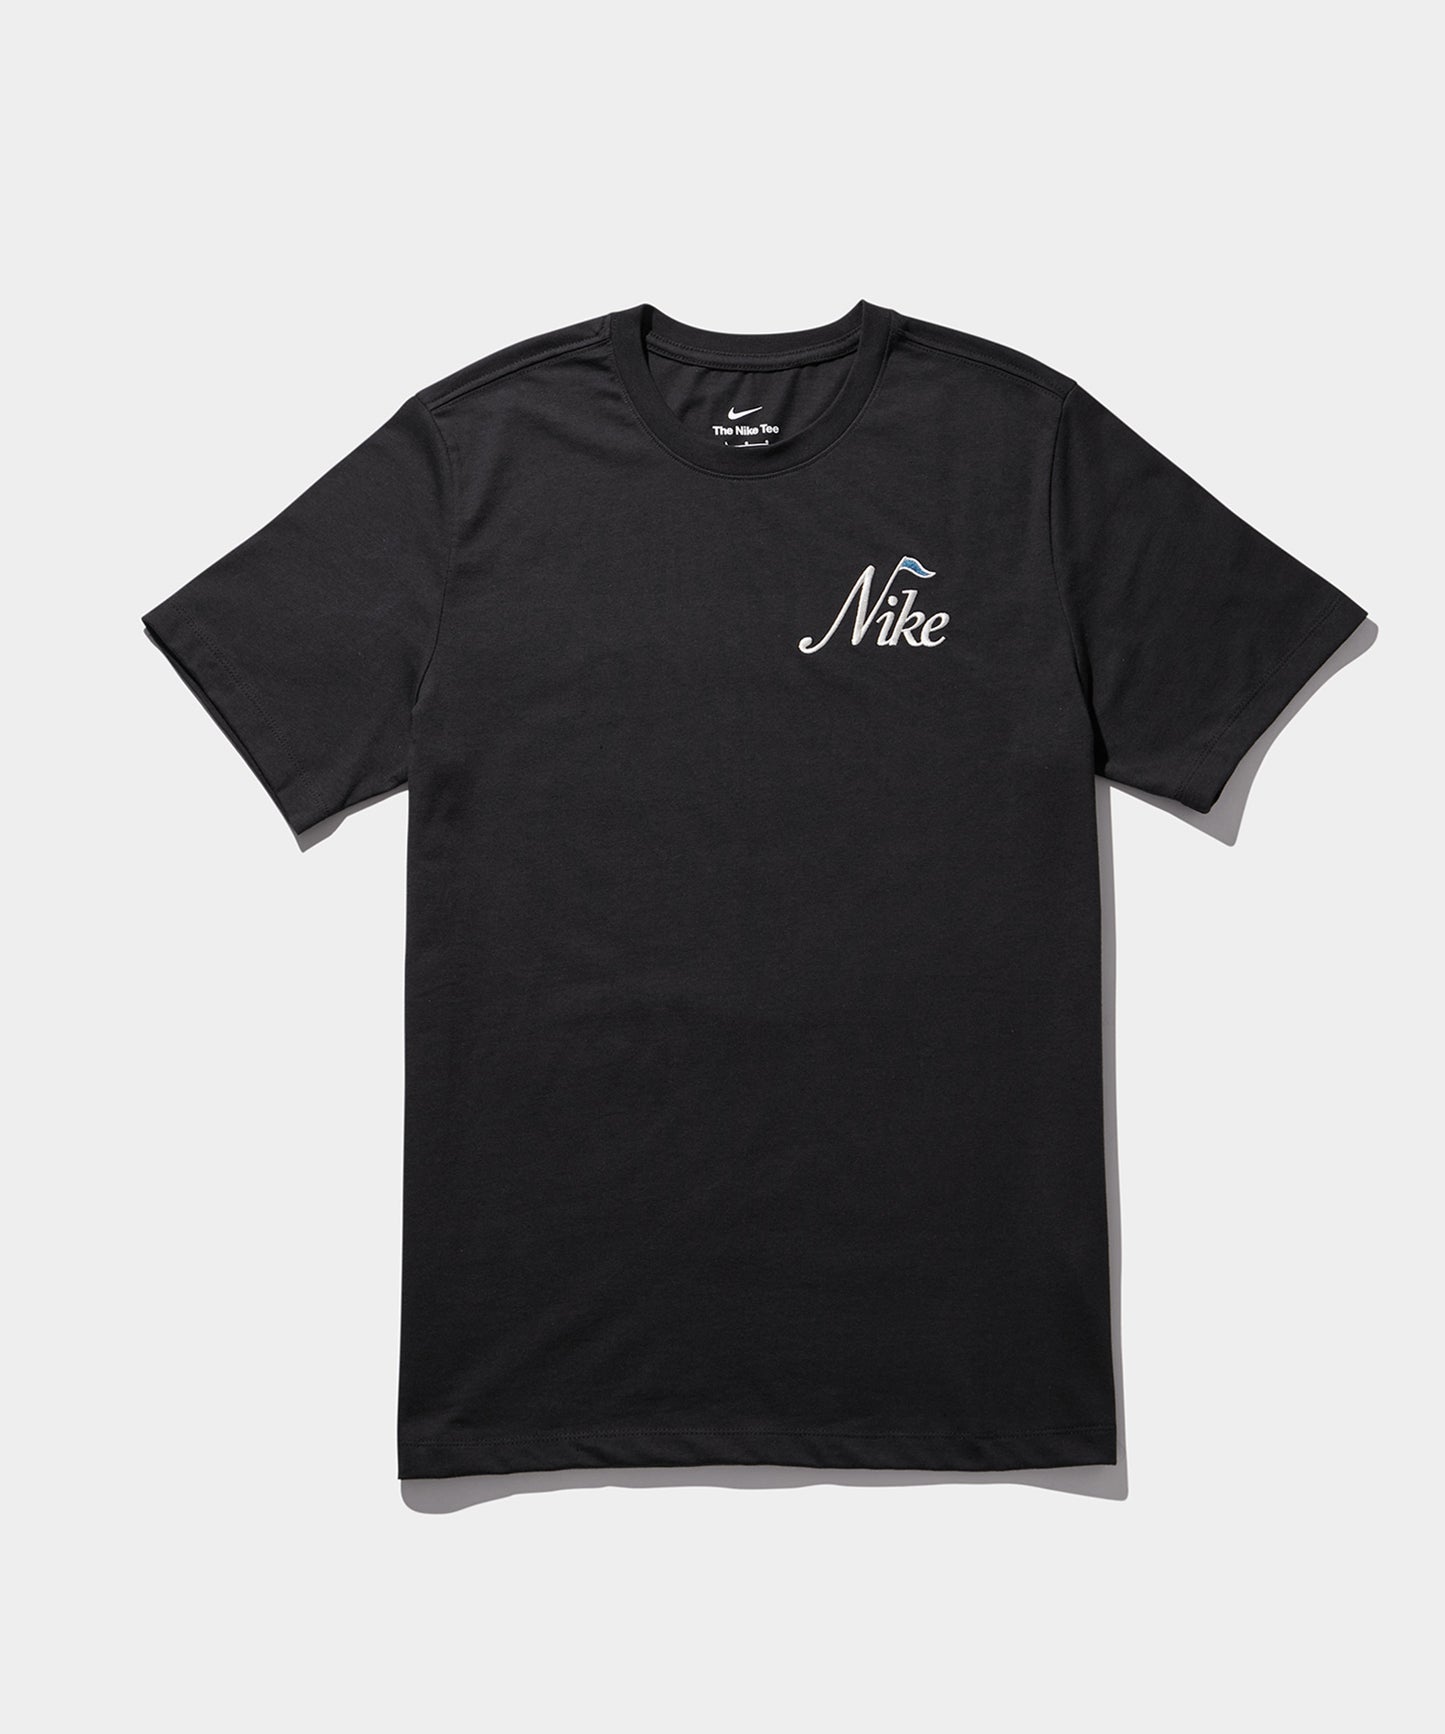 NIKE ゴルフ OC 2 SU24 S/S Tシャツ BLACK